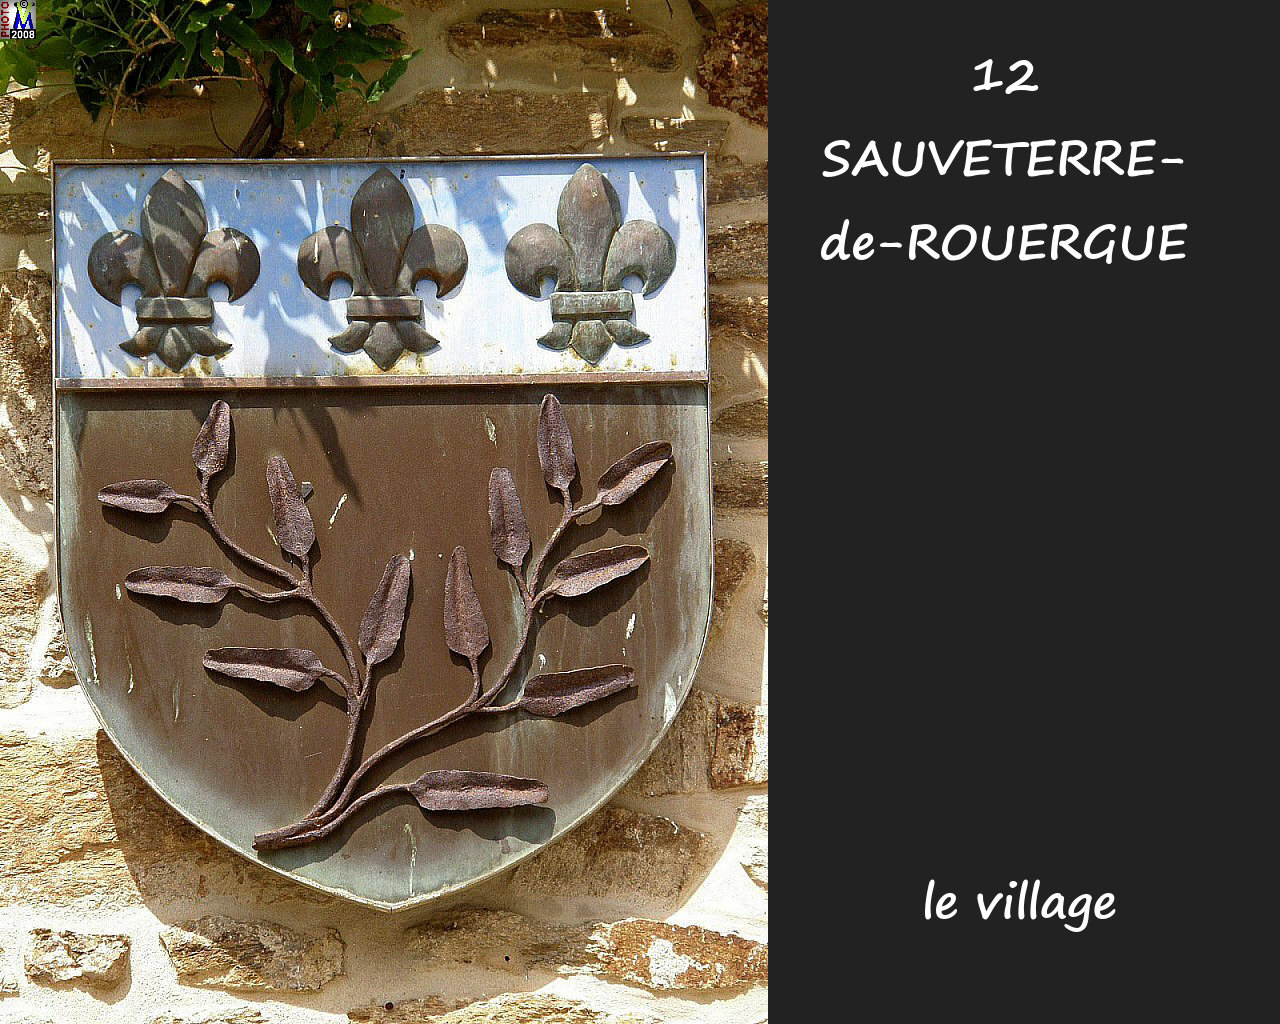 12SAUVETERRE-ROUERGUE_village_200.jpg